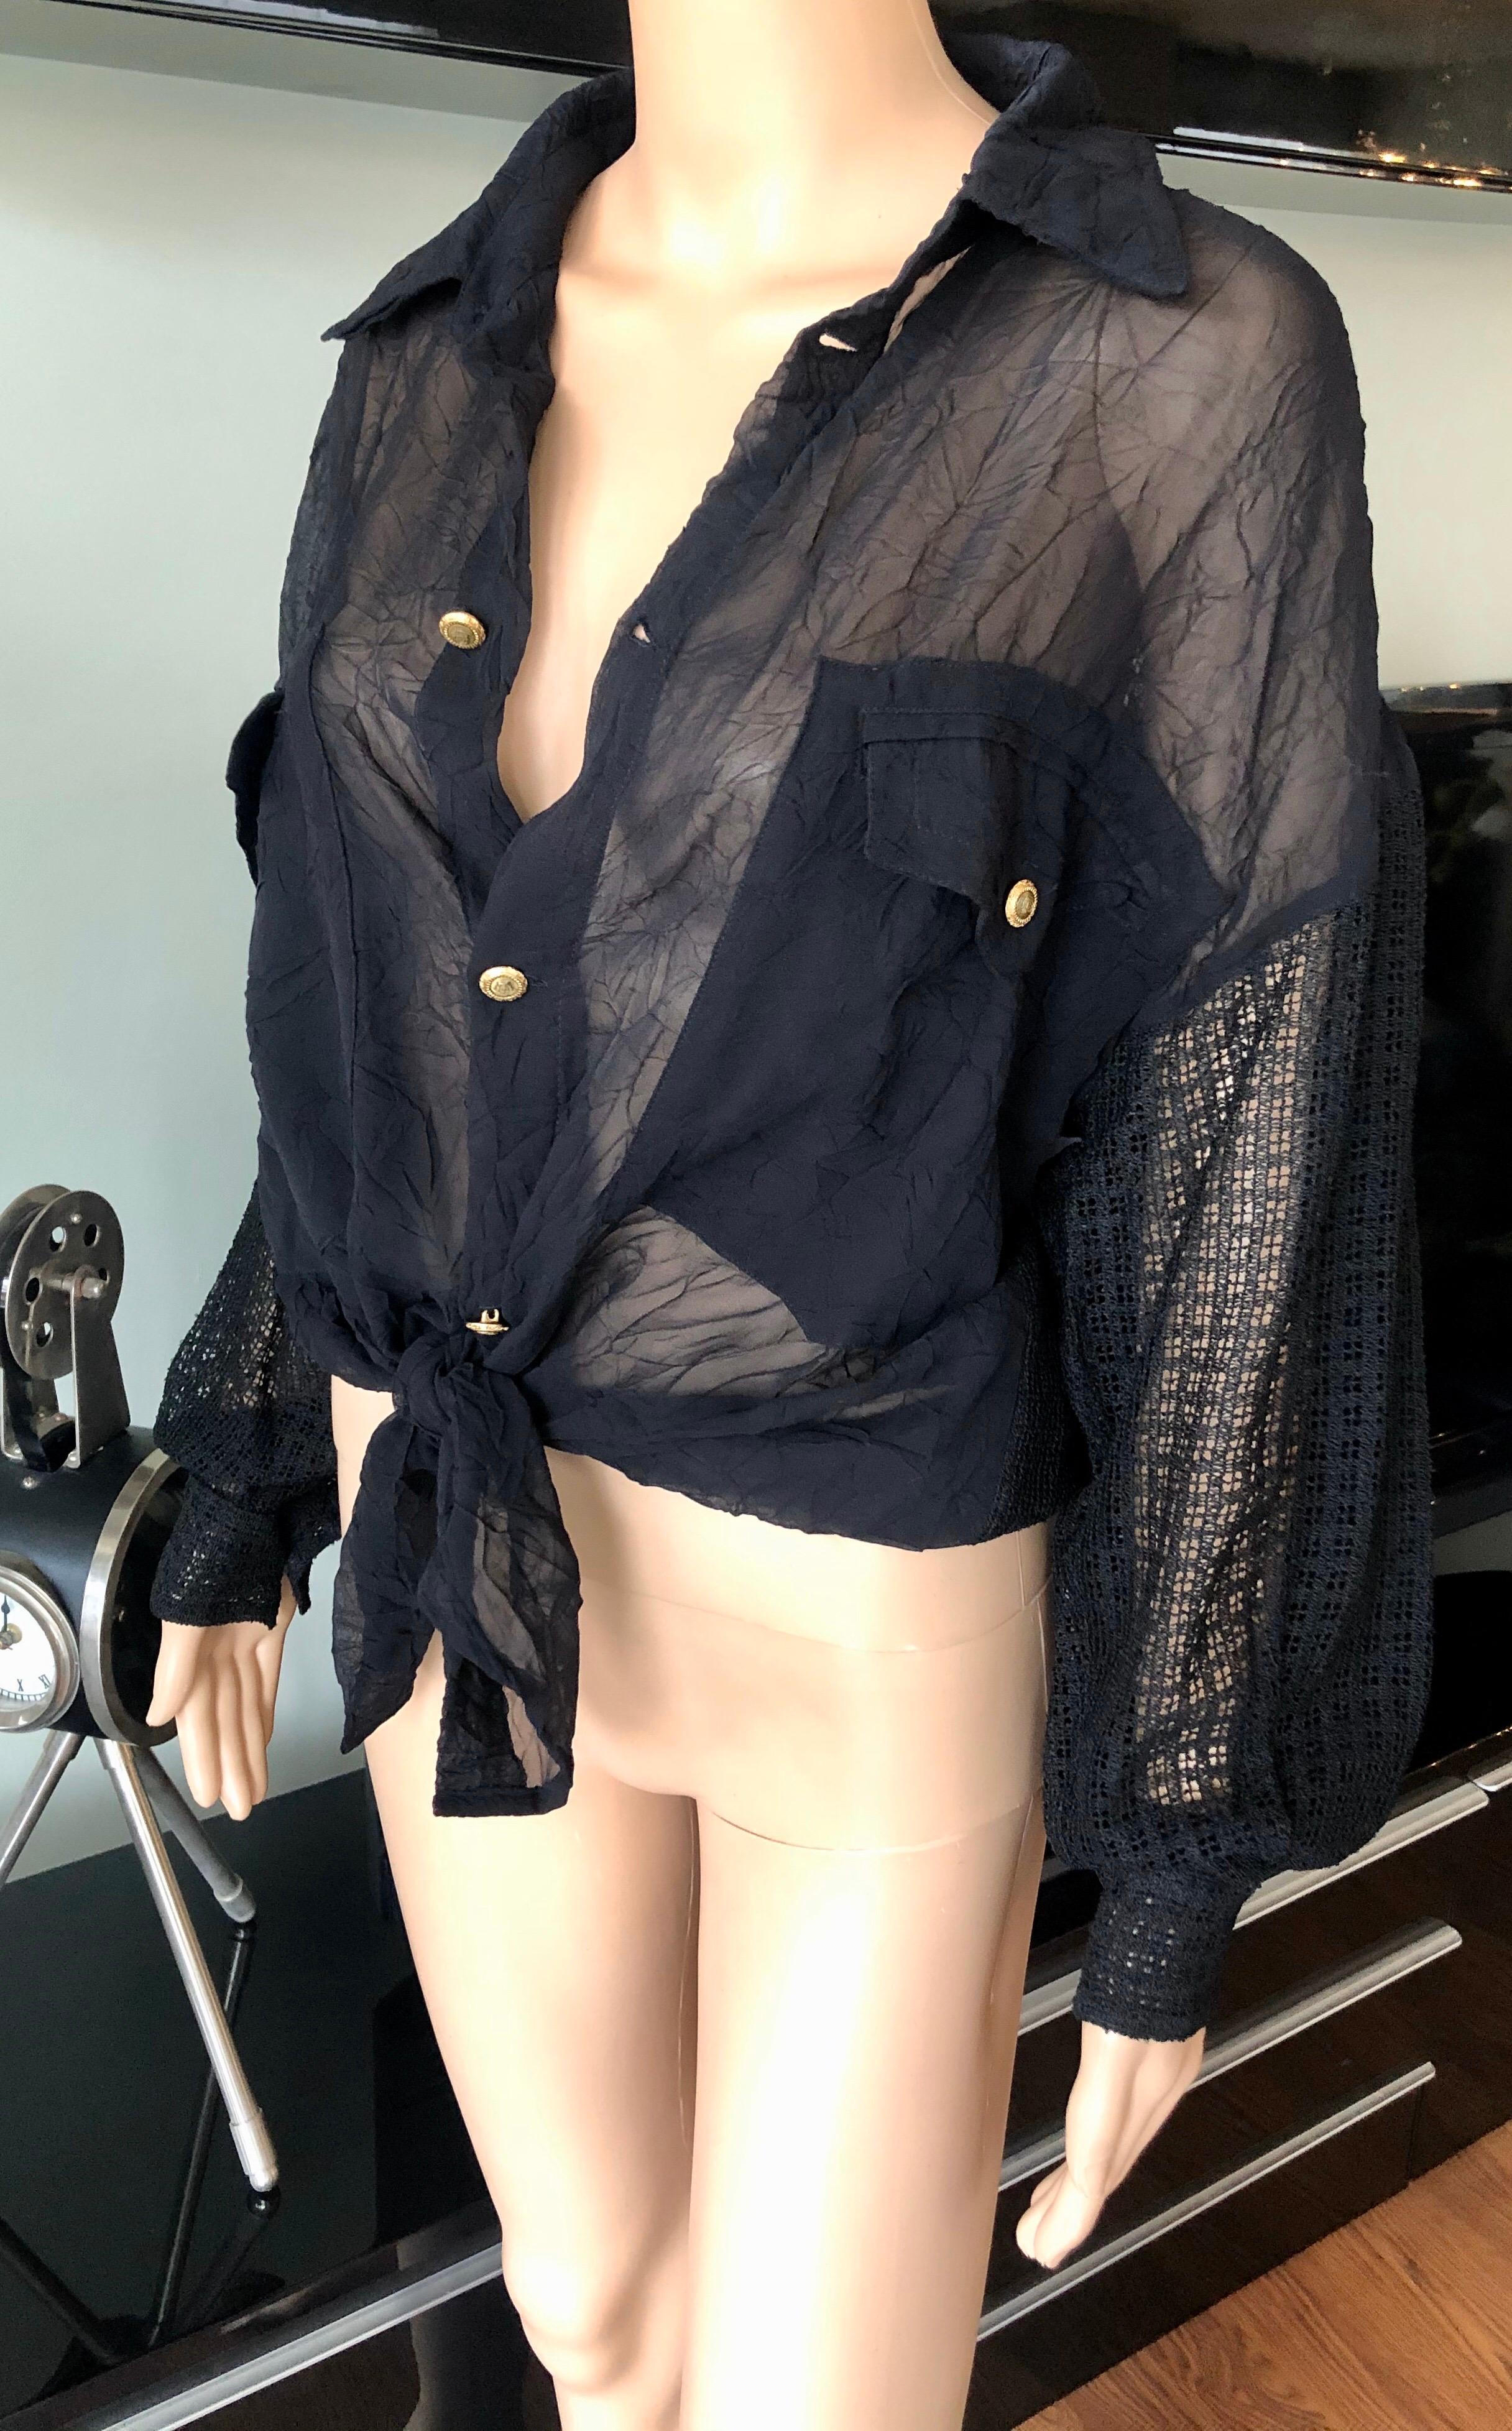 Gianni Versace c. 1990 Vintage Seidenmaschendraht Schwarzes Hemd Bluse Top

Schwarzes Seidenhemd zum Knöpfen von Gianni Versace mit langen Ärmeln und Knopfverschluss auf der Vorderseite.
Bitte beachten Sie, dass das Größenschild verblasst ist, wie